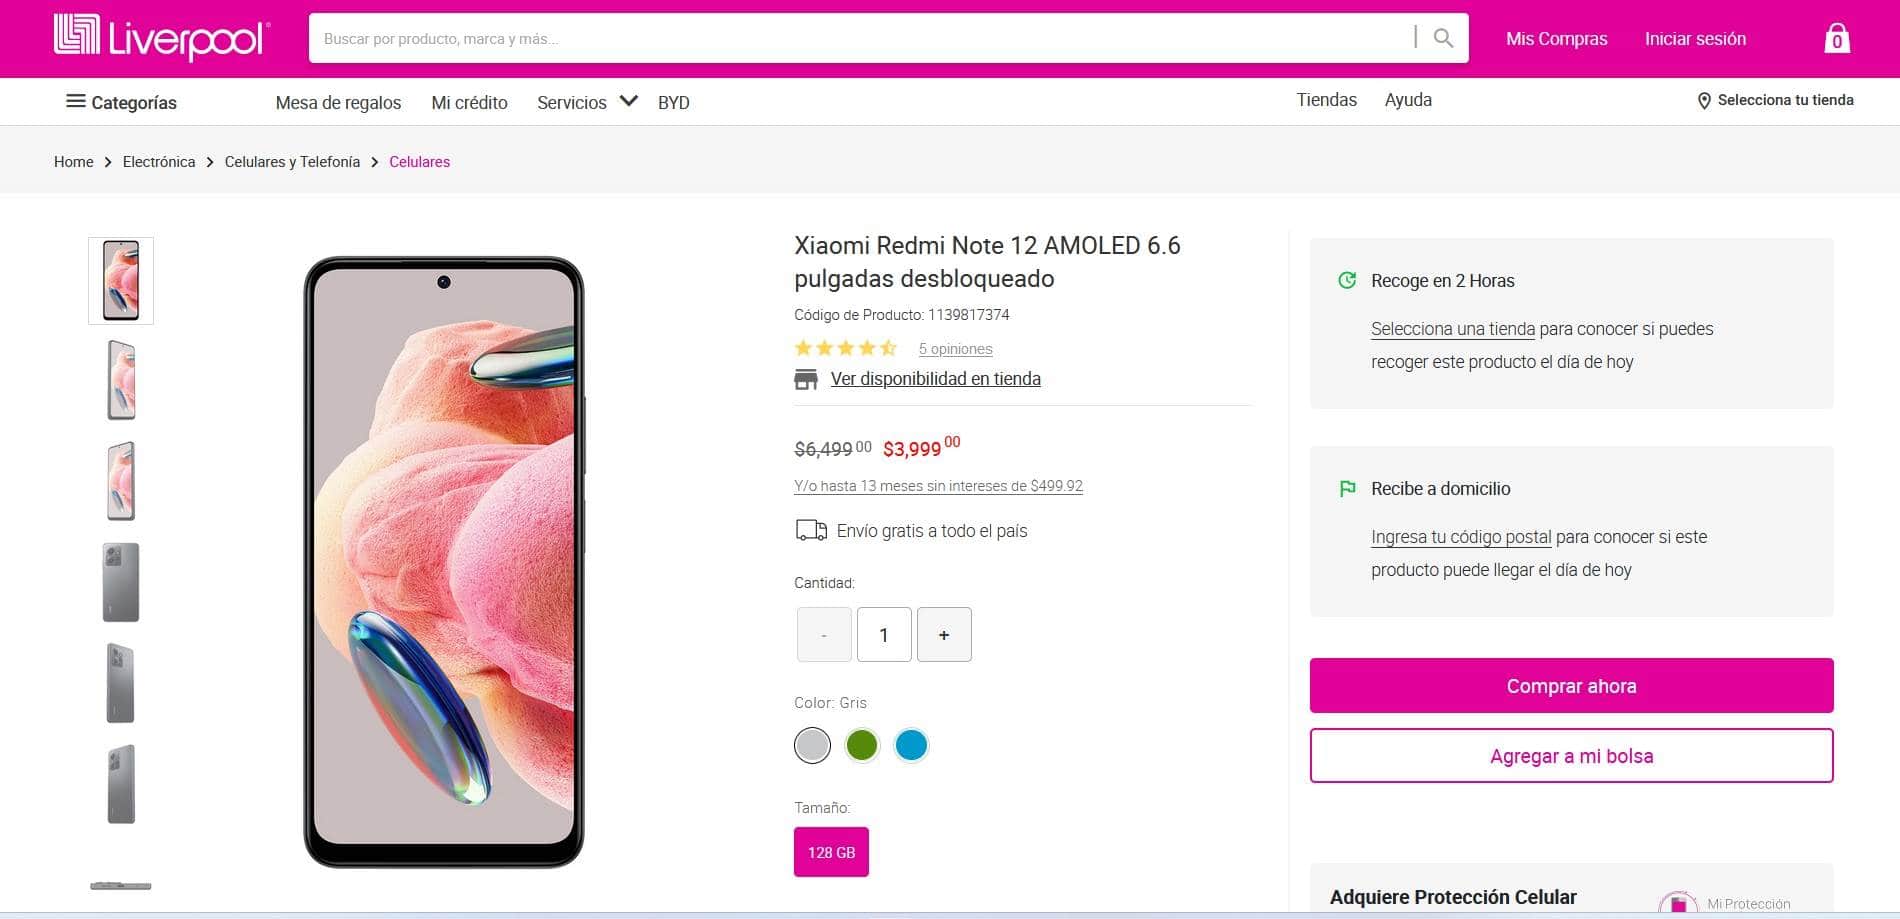 Cuánto cuesta el smartphone Xioami Redmi Note 12 en Liverpool